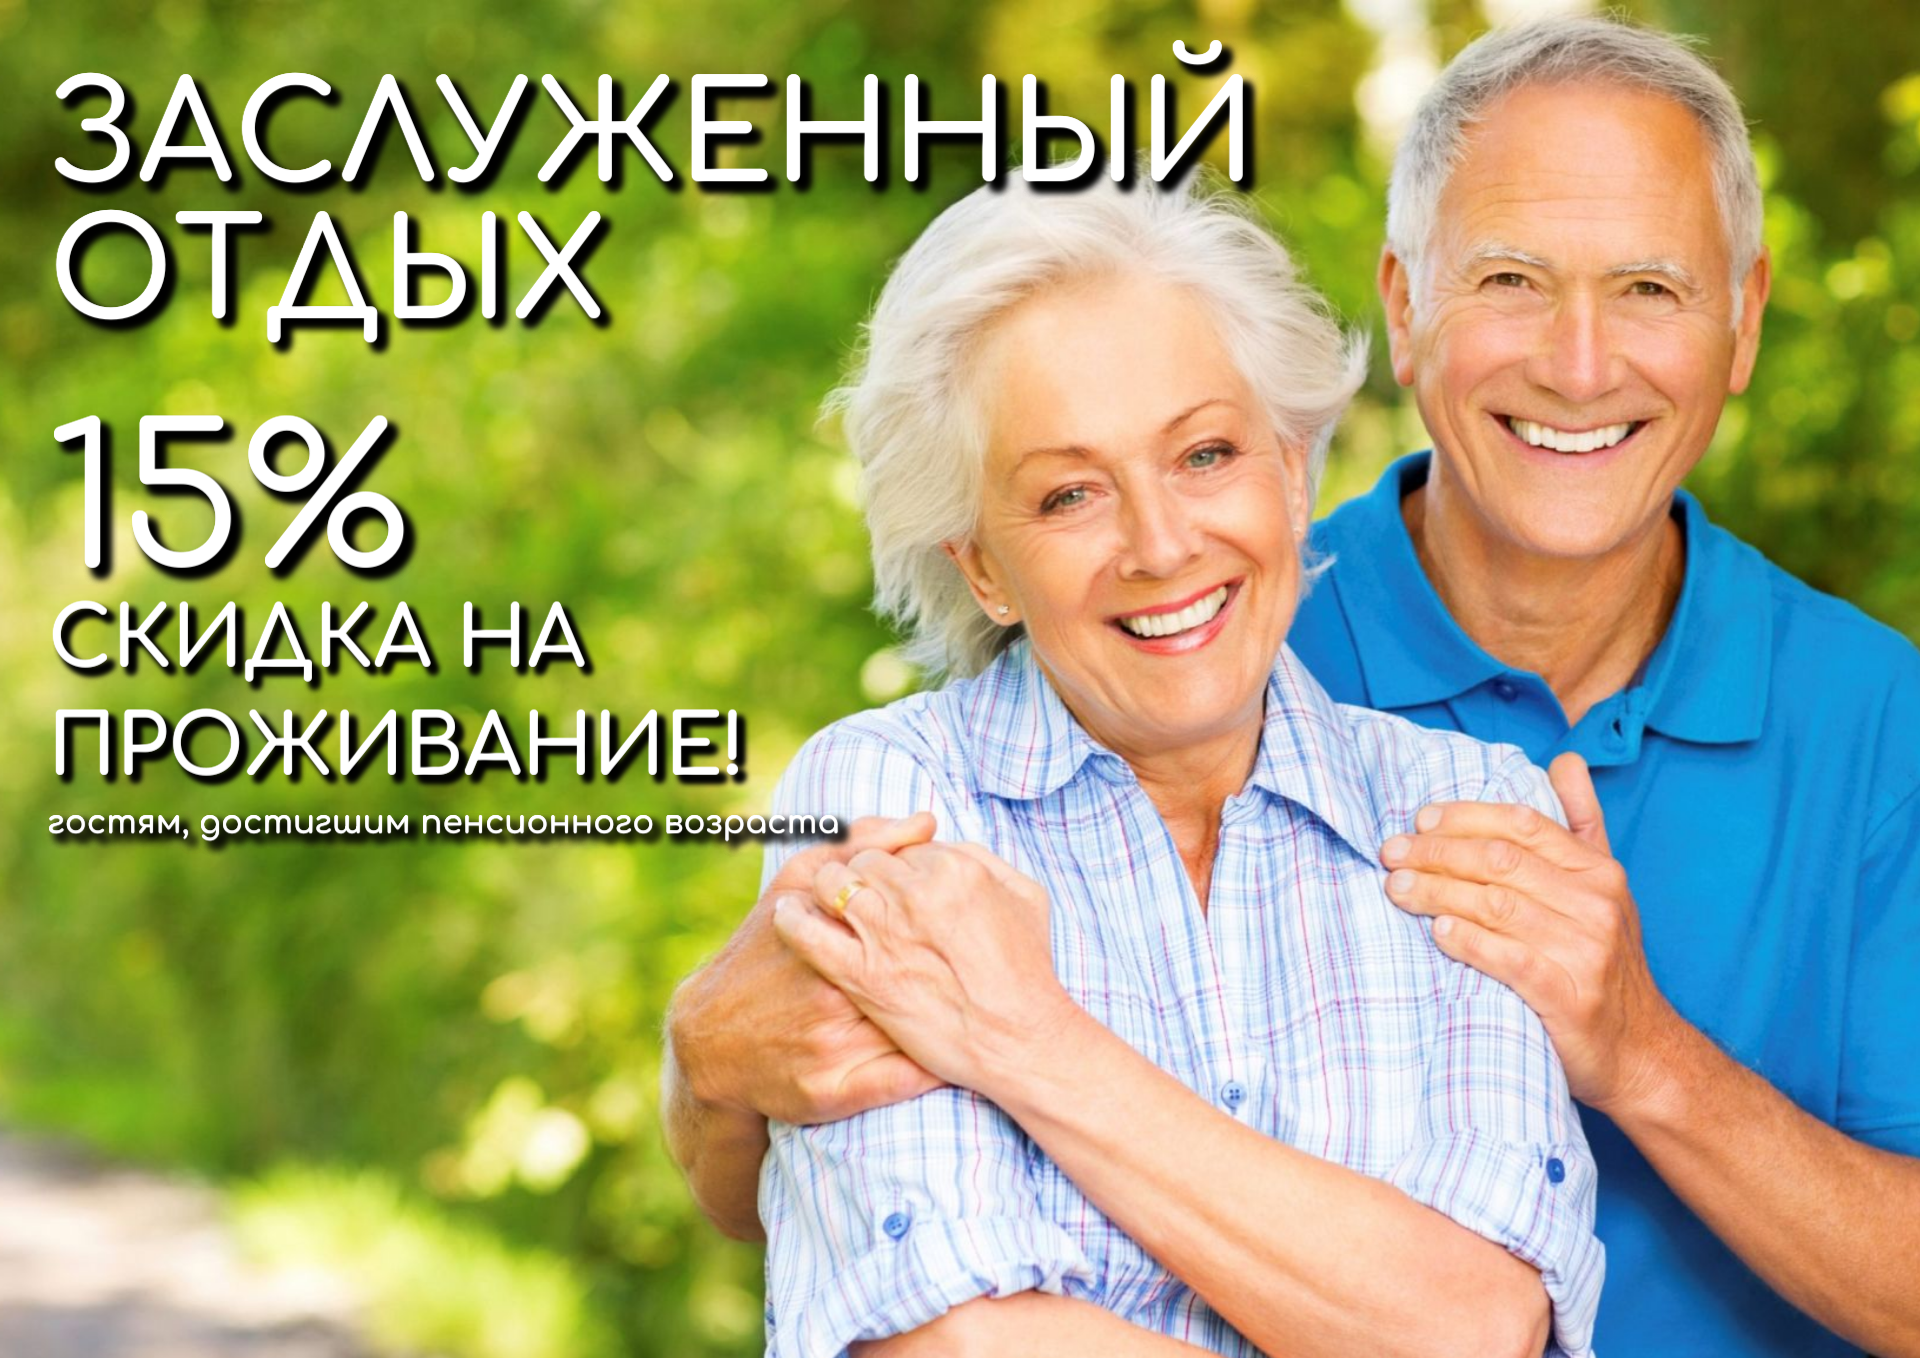 Акция «Заслуженный отдых» - 15% скидка пенсионерам на проживание